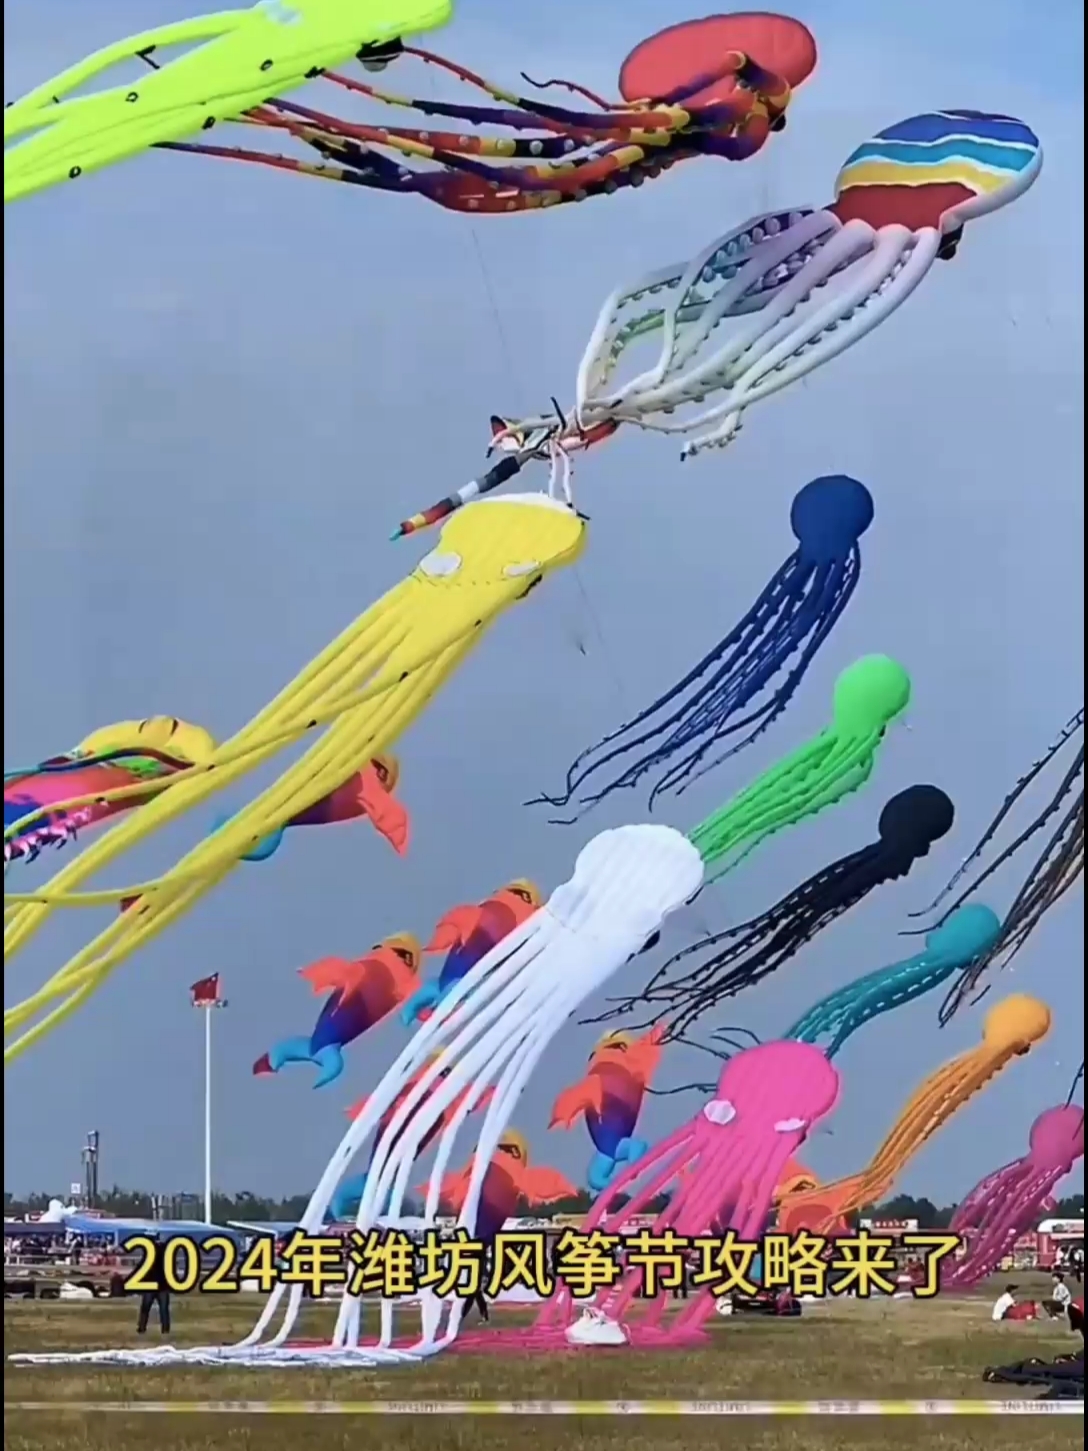 2024年潍坊风筝攻略来了，收藏起来早约票可以免费看风筝会喽！#潍坊风筝节